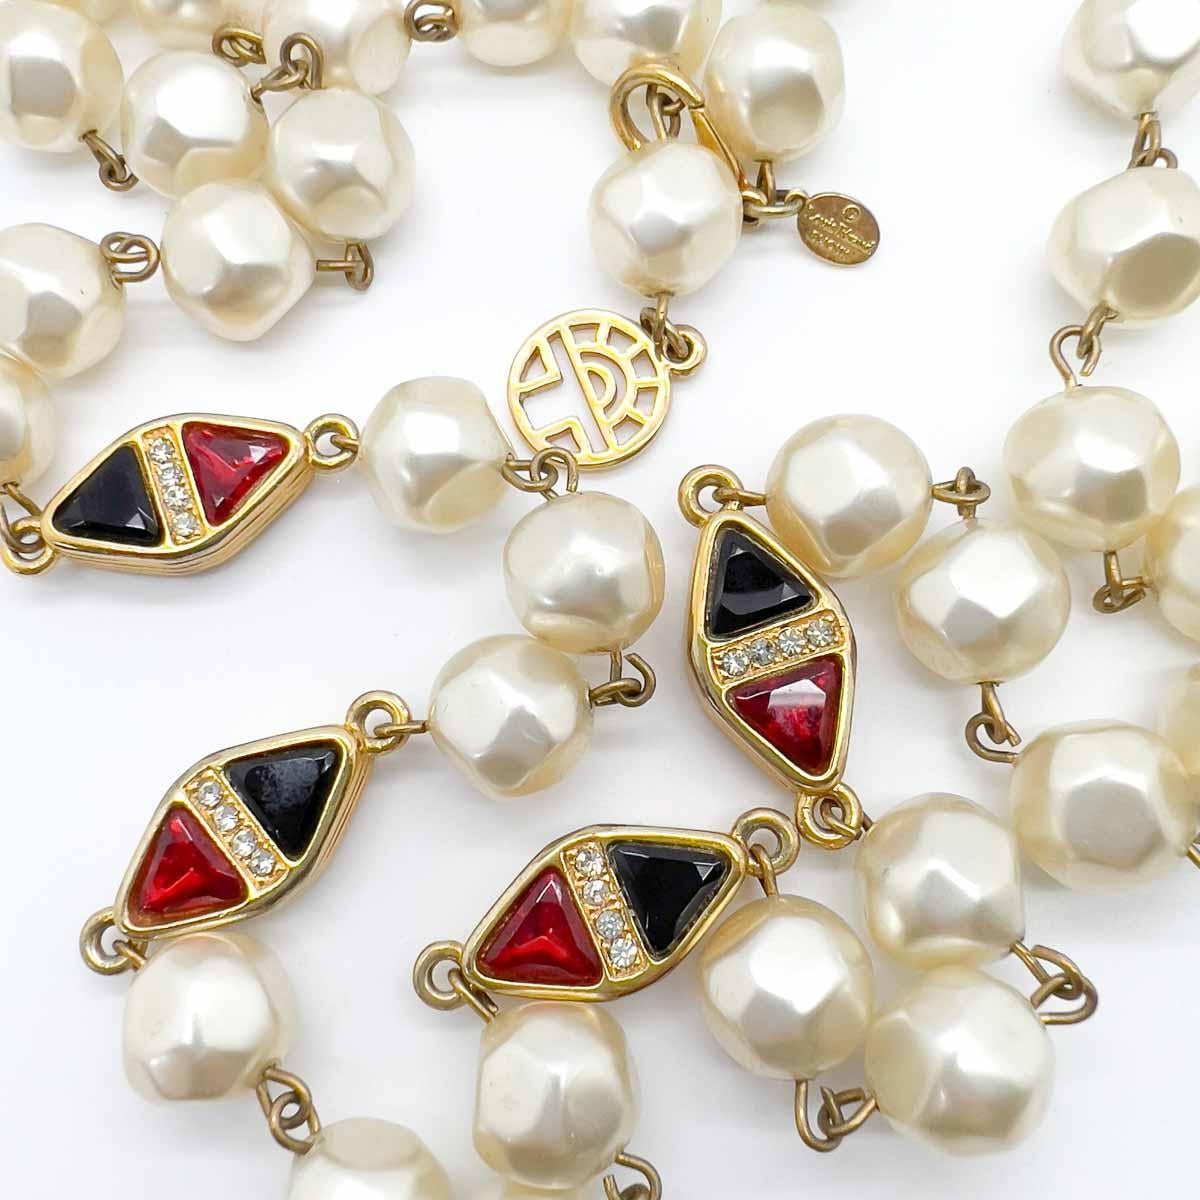 Eine Vintage Louis Féraud Perlenkette. Barock inspirierte Perlen, die mit Juwelen besetzt sind. Jede Station ist mit Kristallen im Phantasieschliff in Rubinrot und Schwarz besetzt und mit einer Reihe kleiner Chatons abgeschlossen. Ein absolut